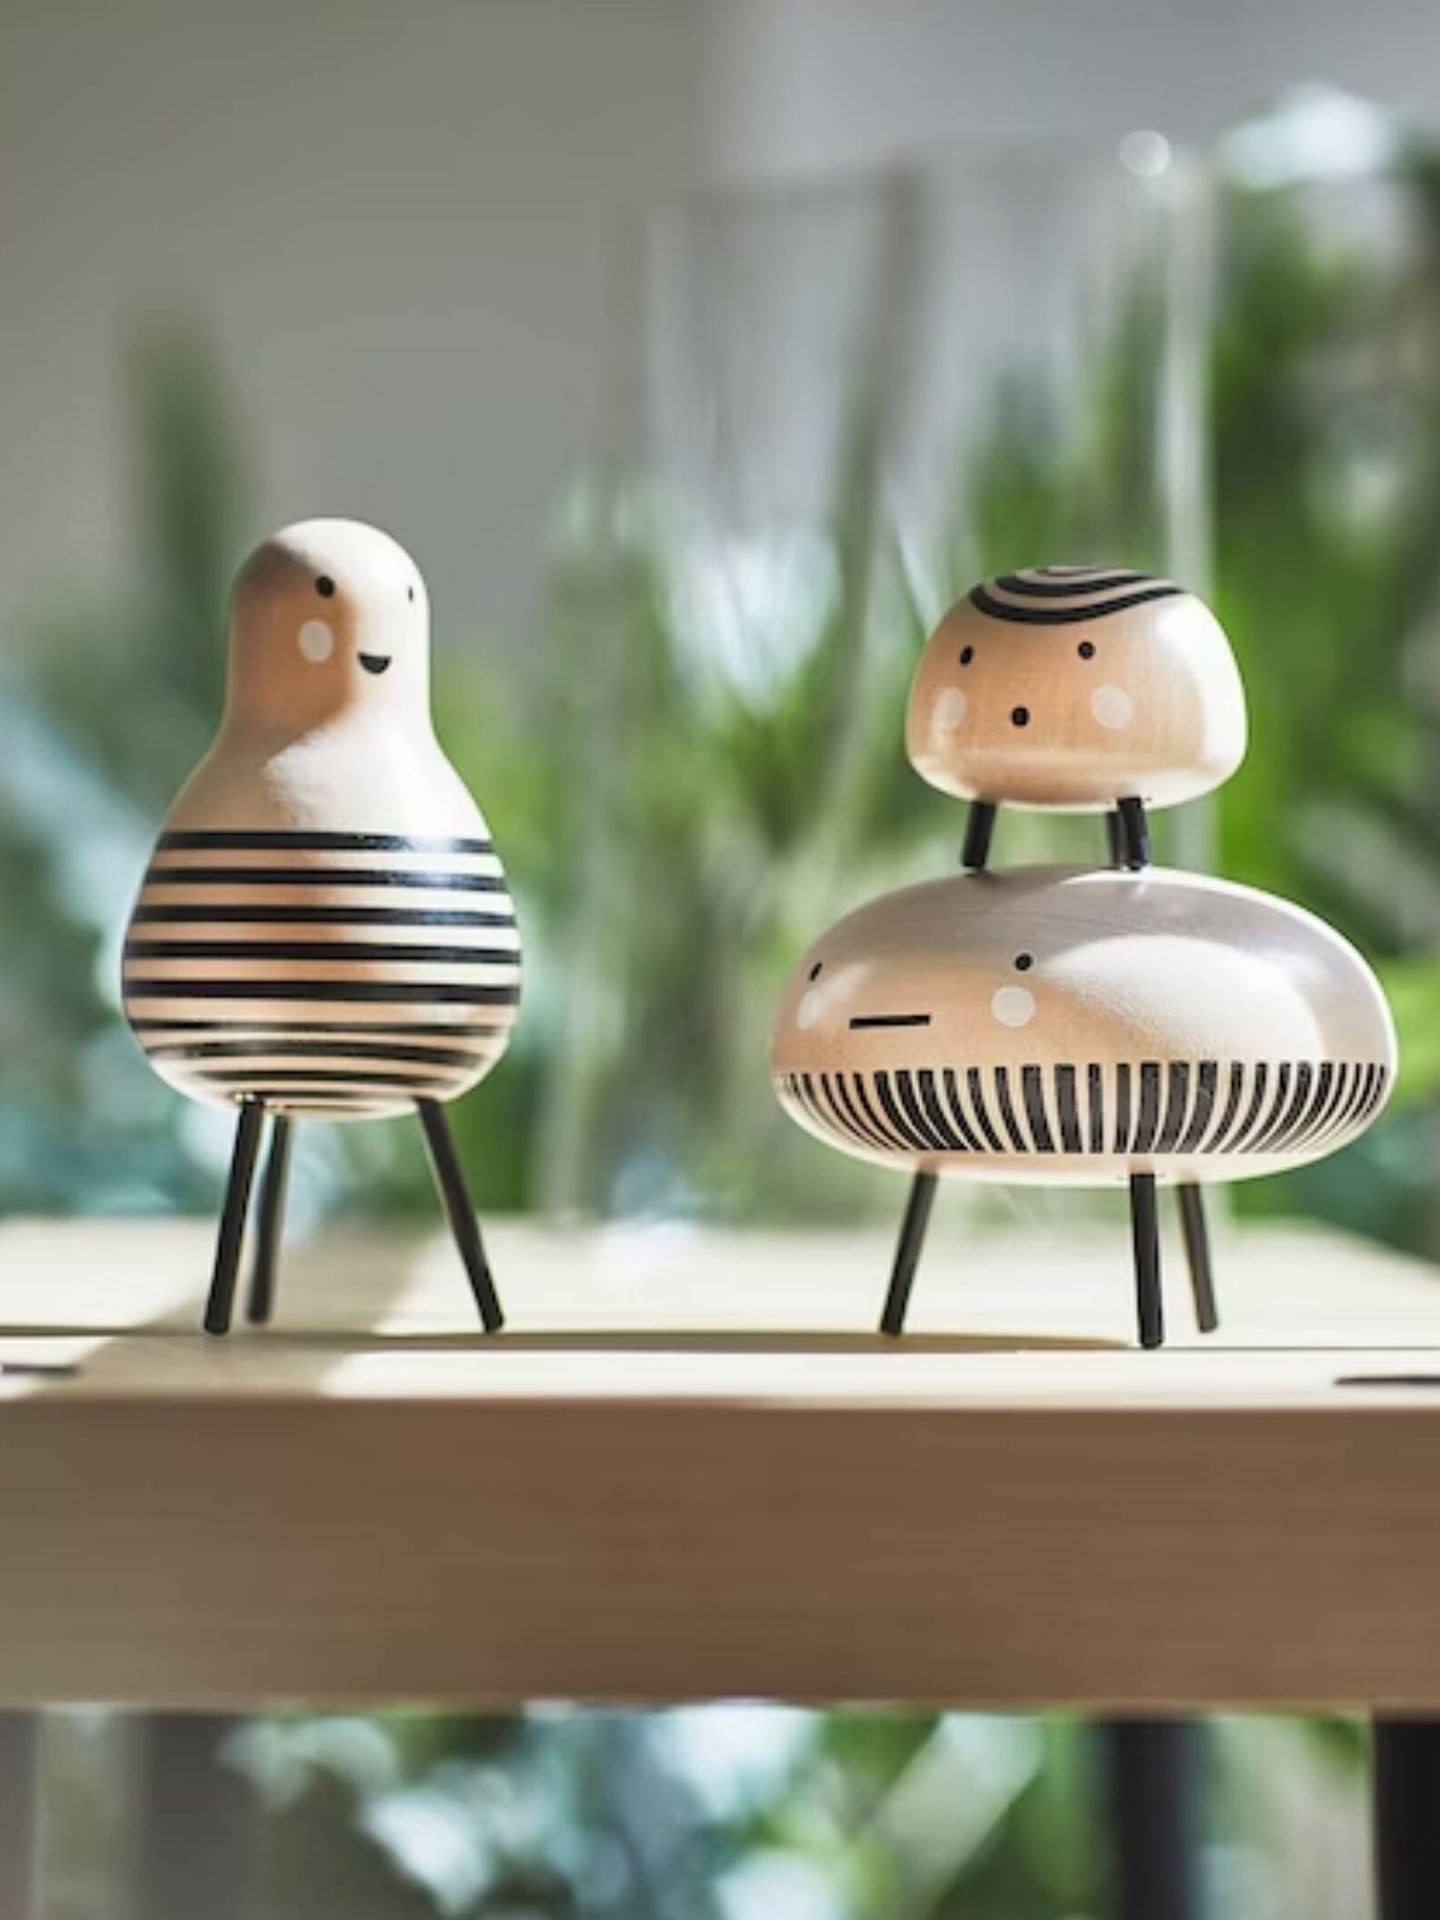 Cada figurita tiene su propia personalidad. (Cortesía/Ikea)